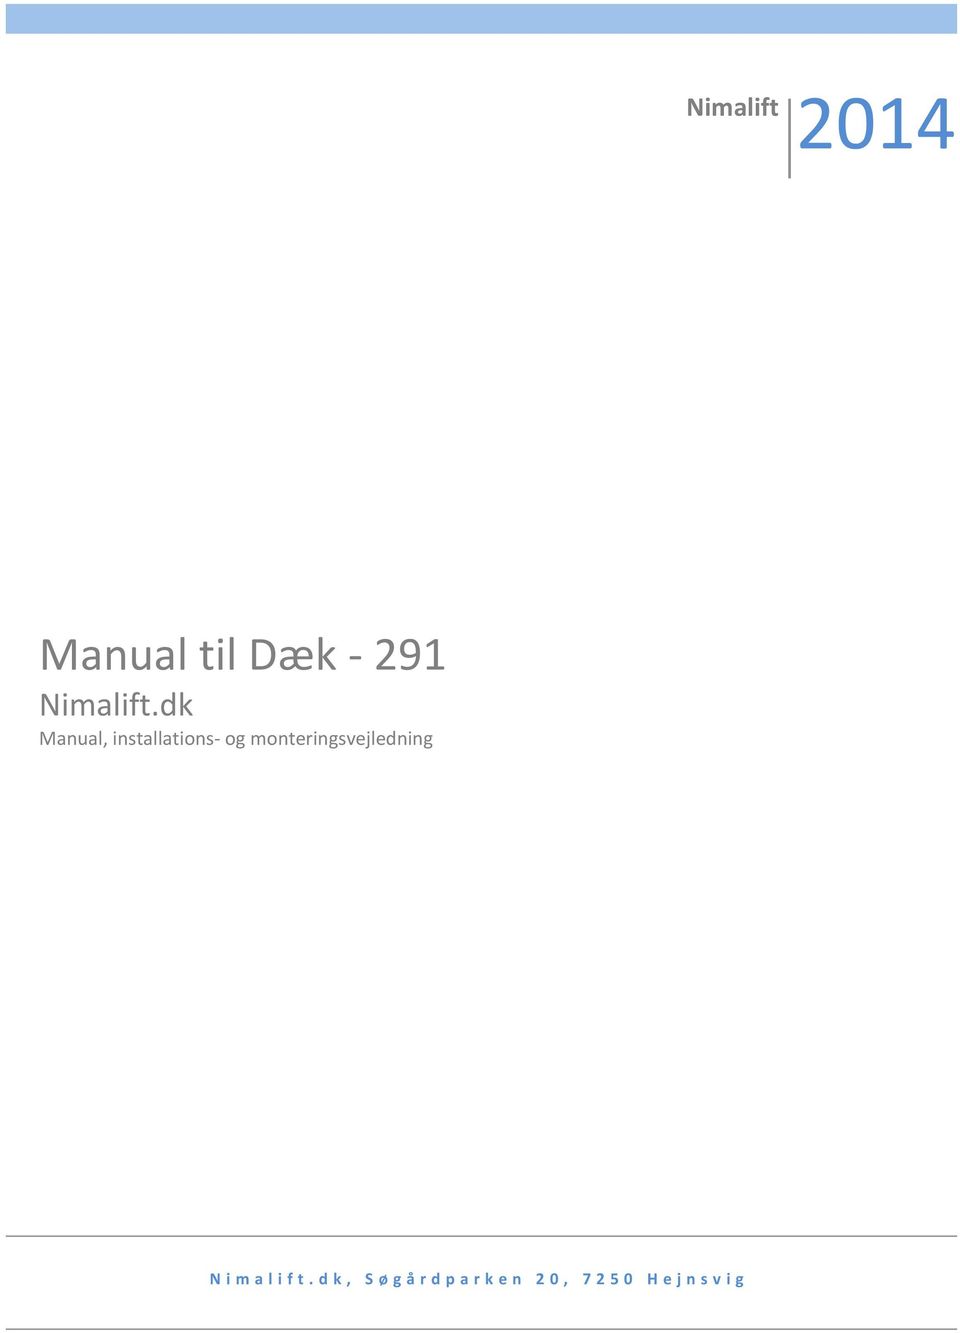 dk Manual, installations- og